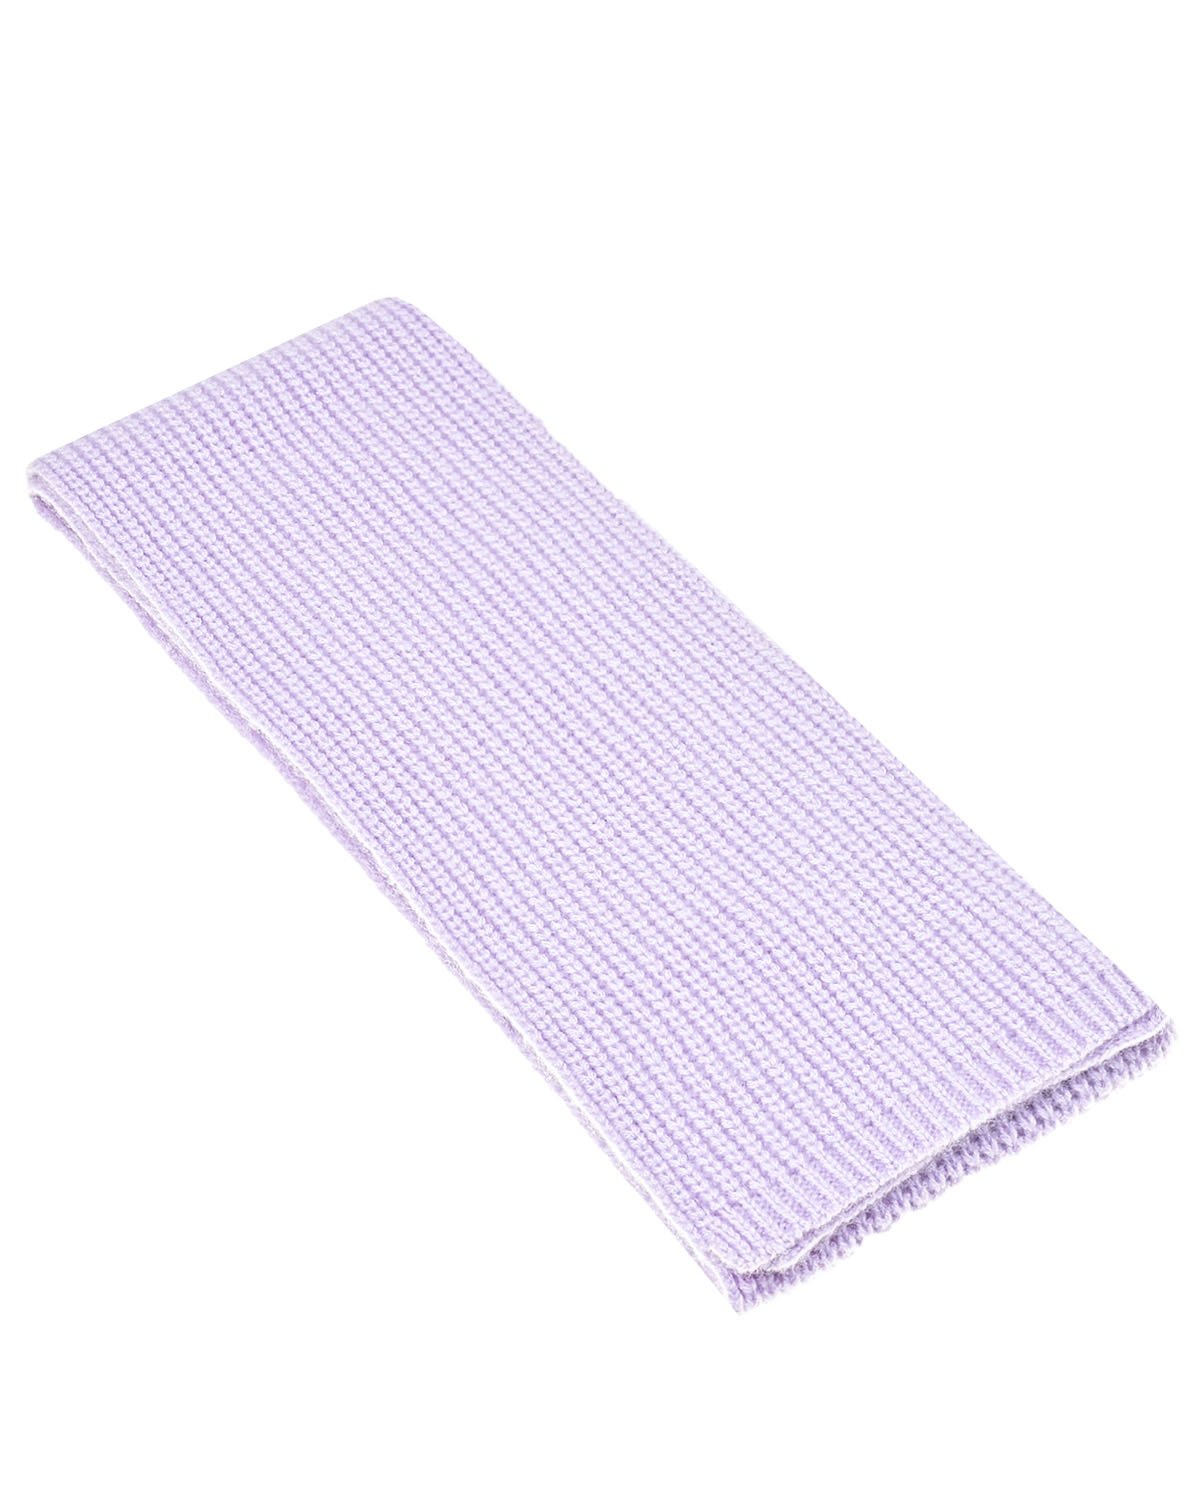 Кашемировый шарф лилового цвета, 162x15 см Yves Salomon детский, размер unica - фото 1